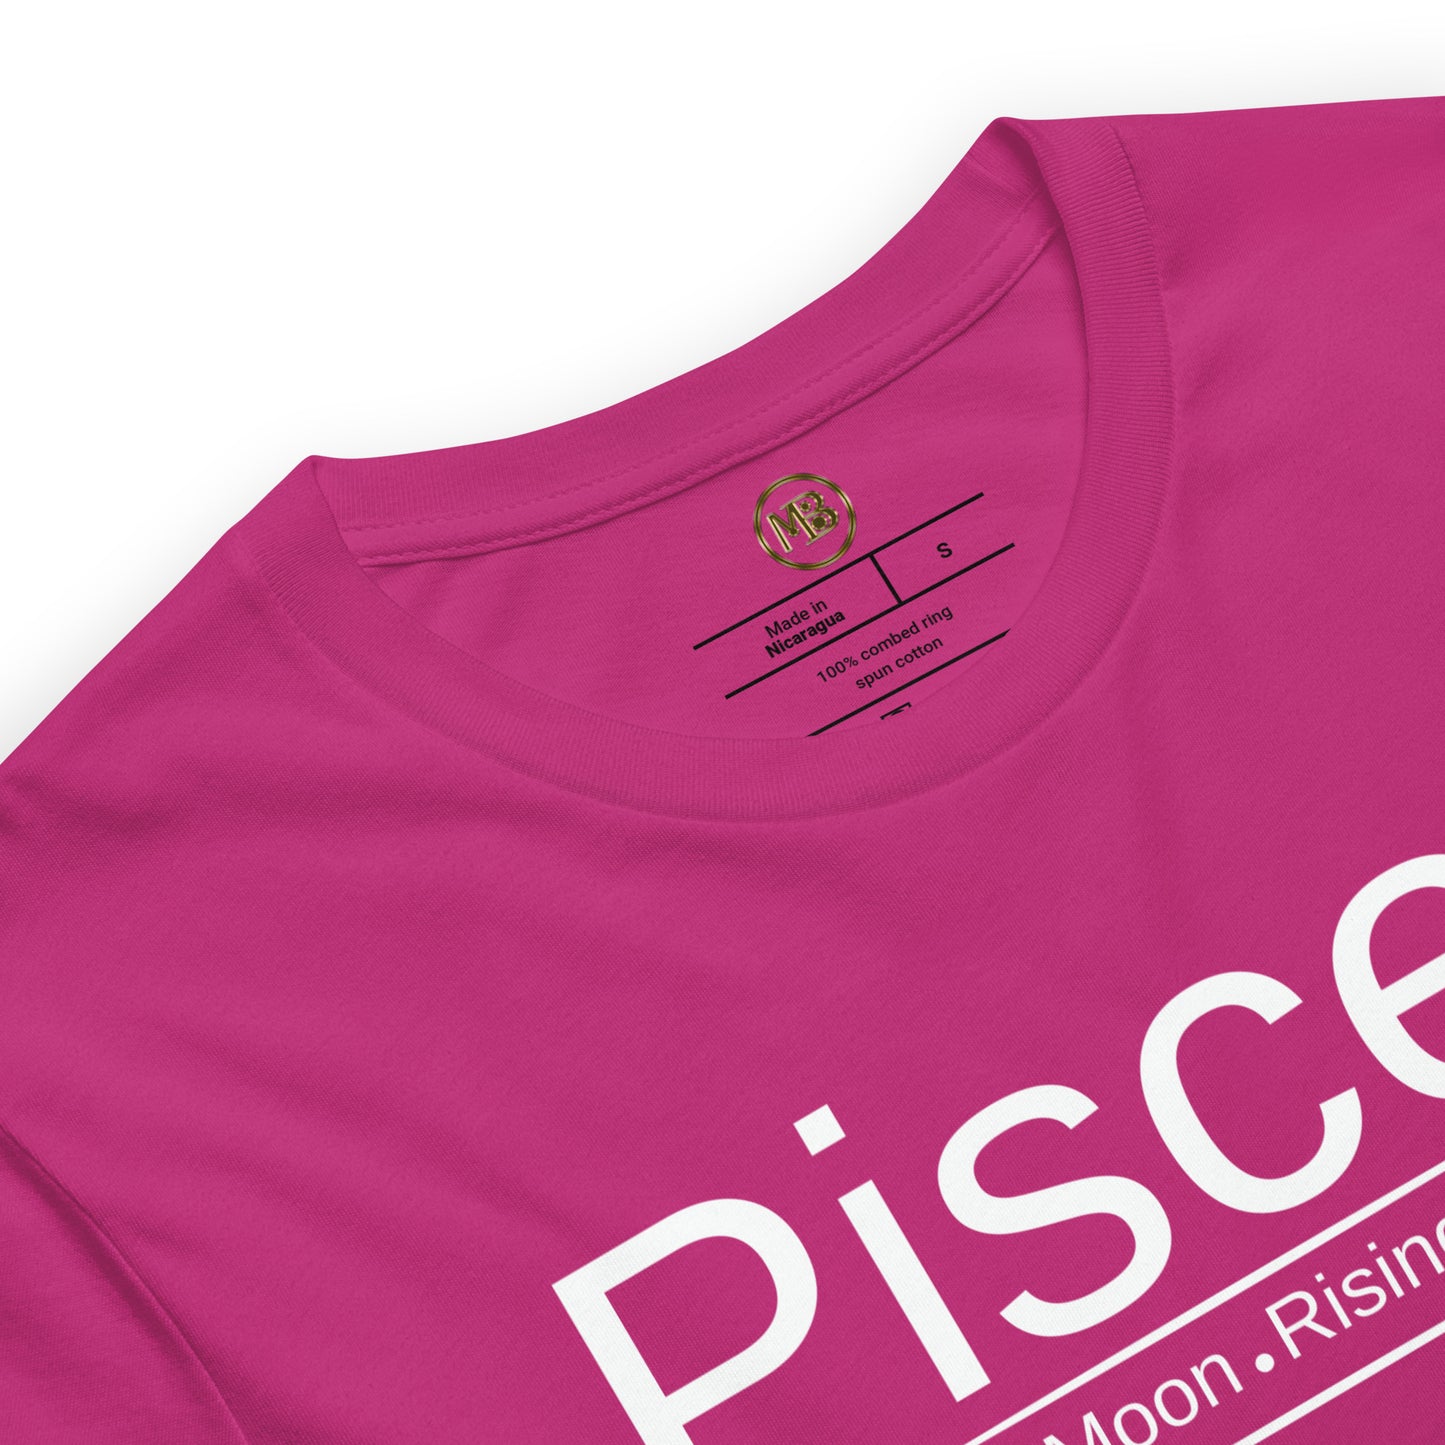 Pisces Zodiac Unisex T-Shirt